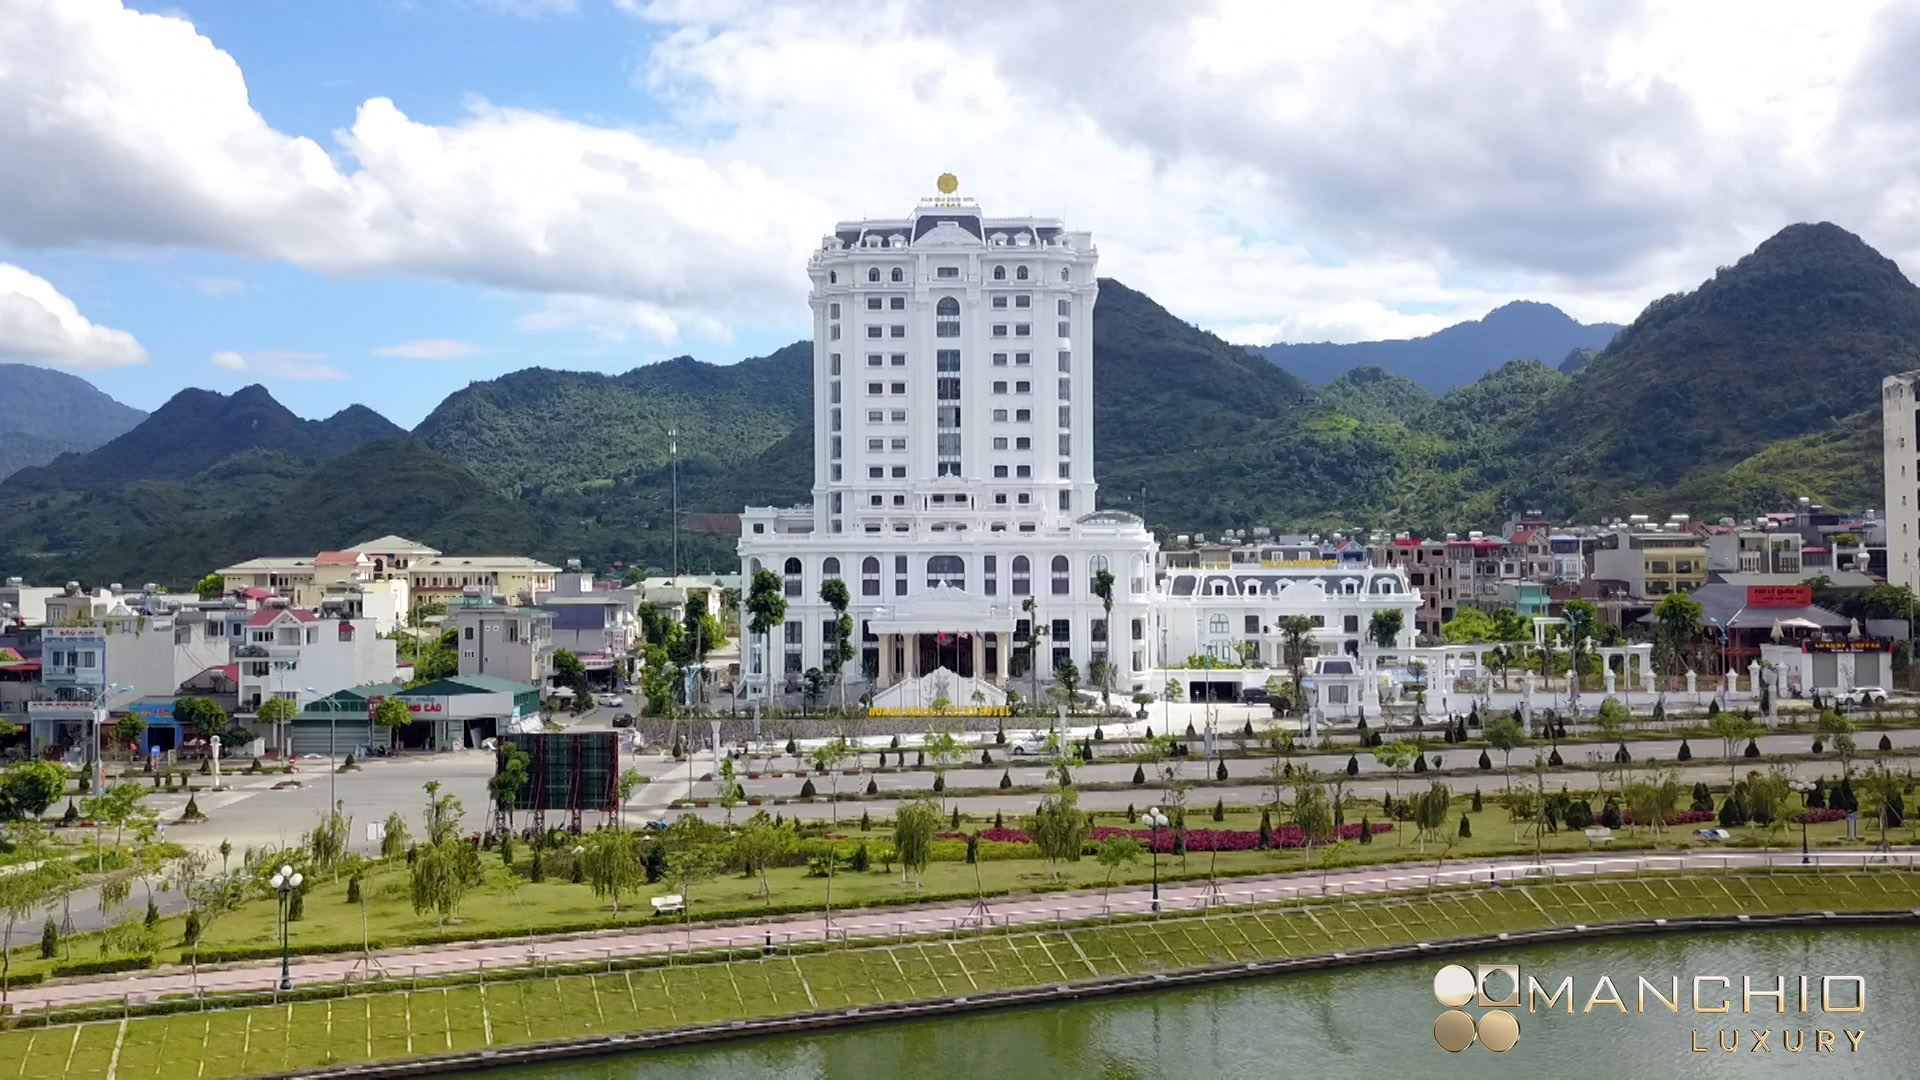 1636772330 Hoang Nham Luxury Hotel Lai Chau Province